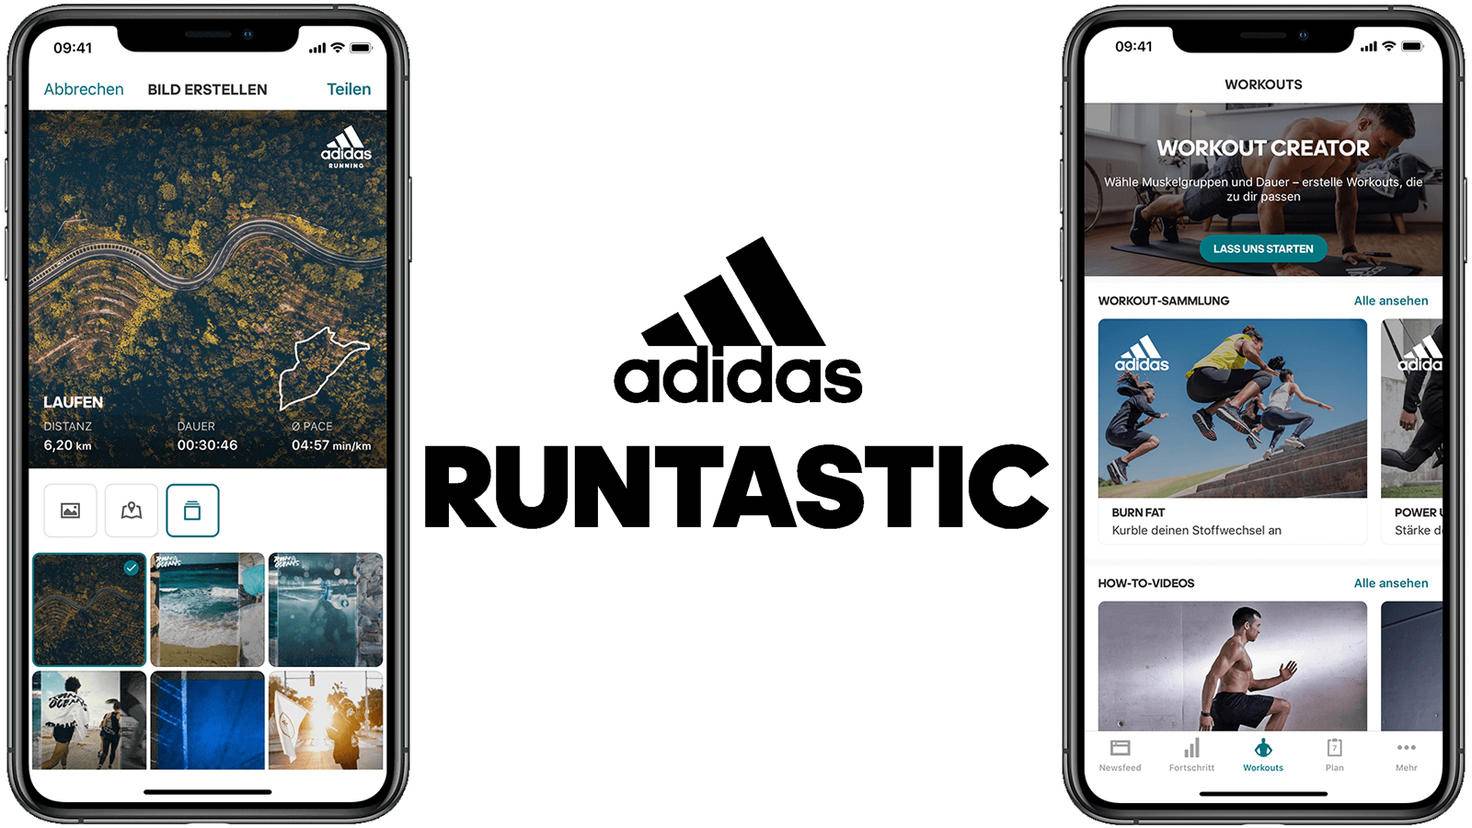 Alles, was Sie über die Adidas Runtastic App wissen müssen - Infos & Tipps